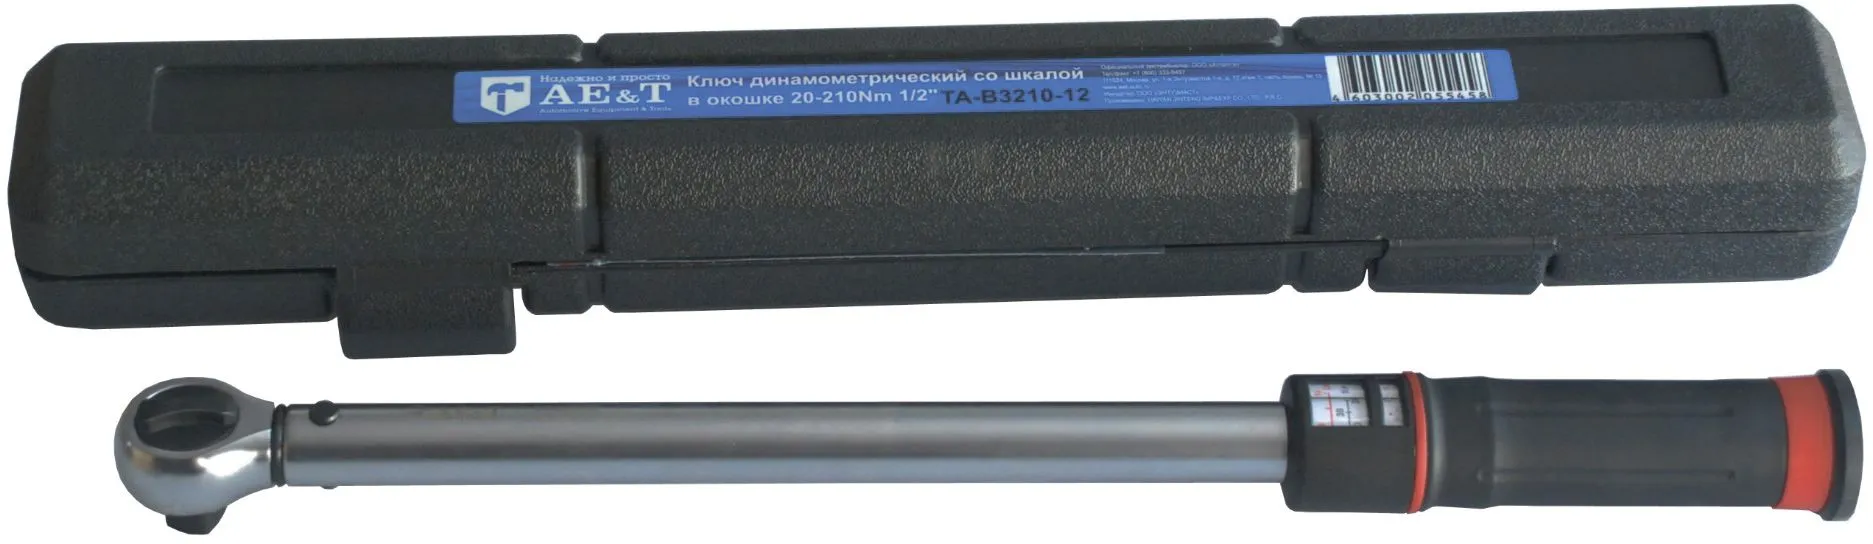 Ключ динамометрический со шкалой в окошке 20-210Nm 1/2" AE&T TA-B3210-12